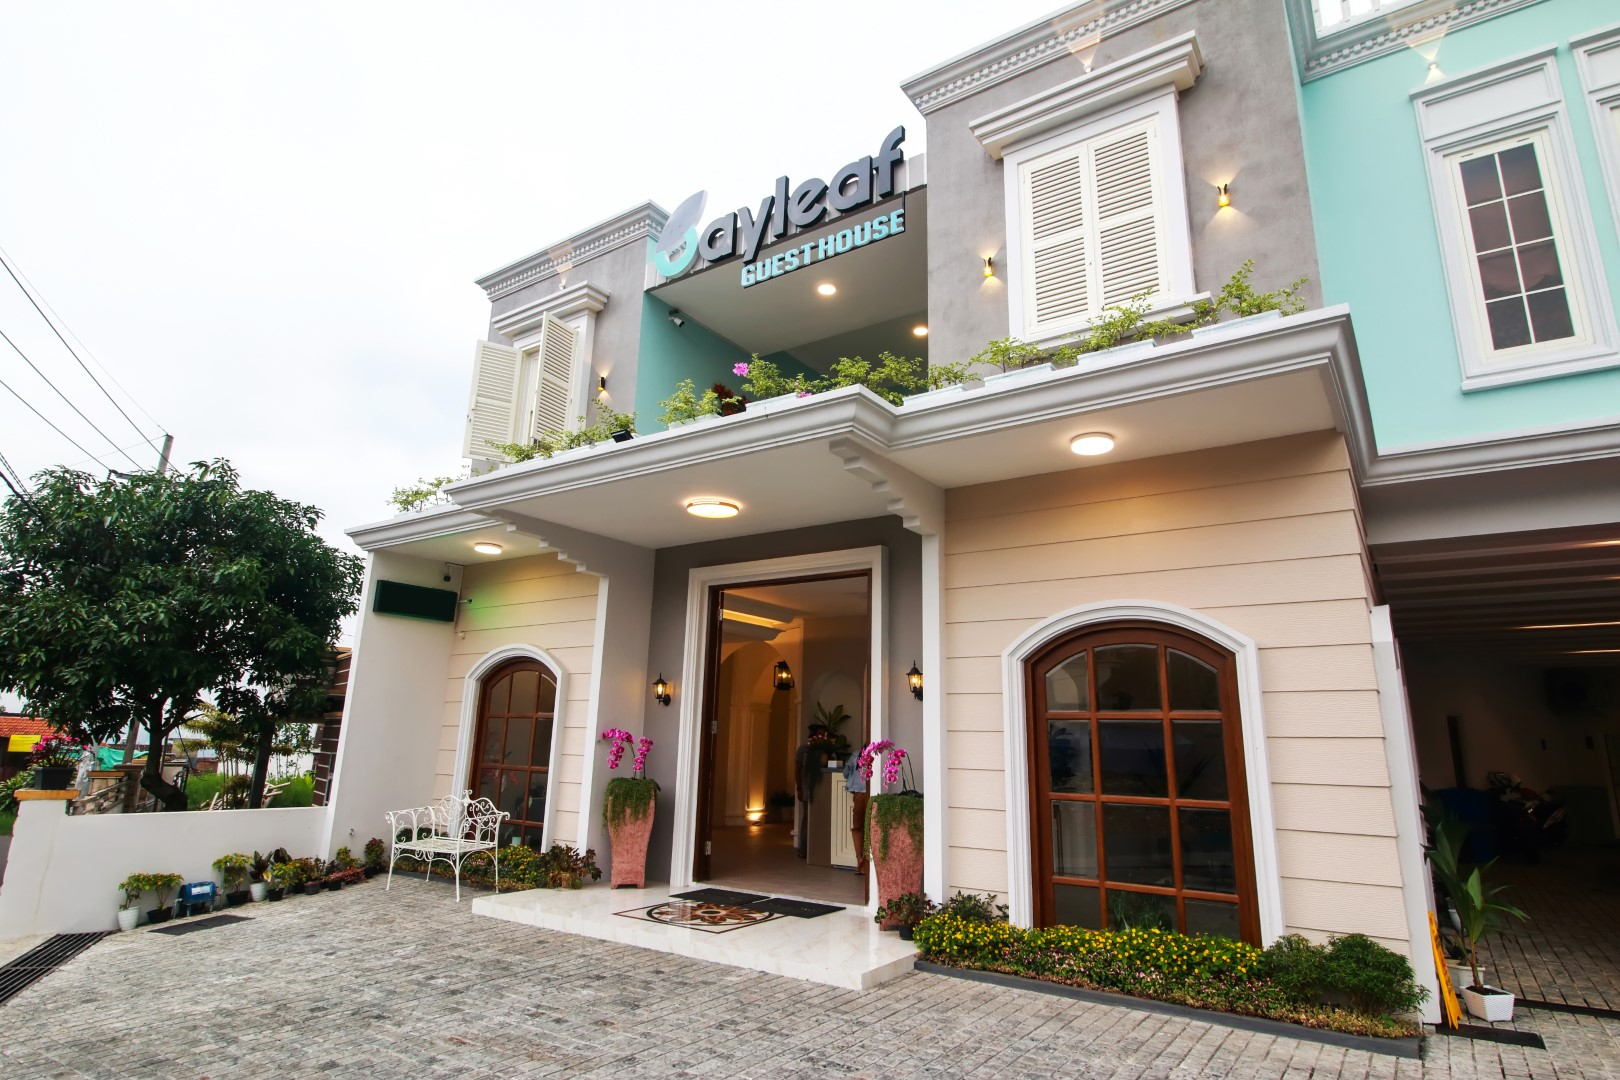 Exterior & Views 1, Bayleaf Guest House Syariah, Malang